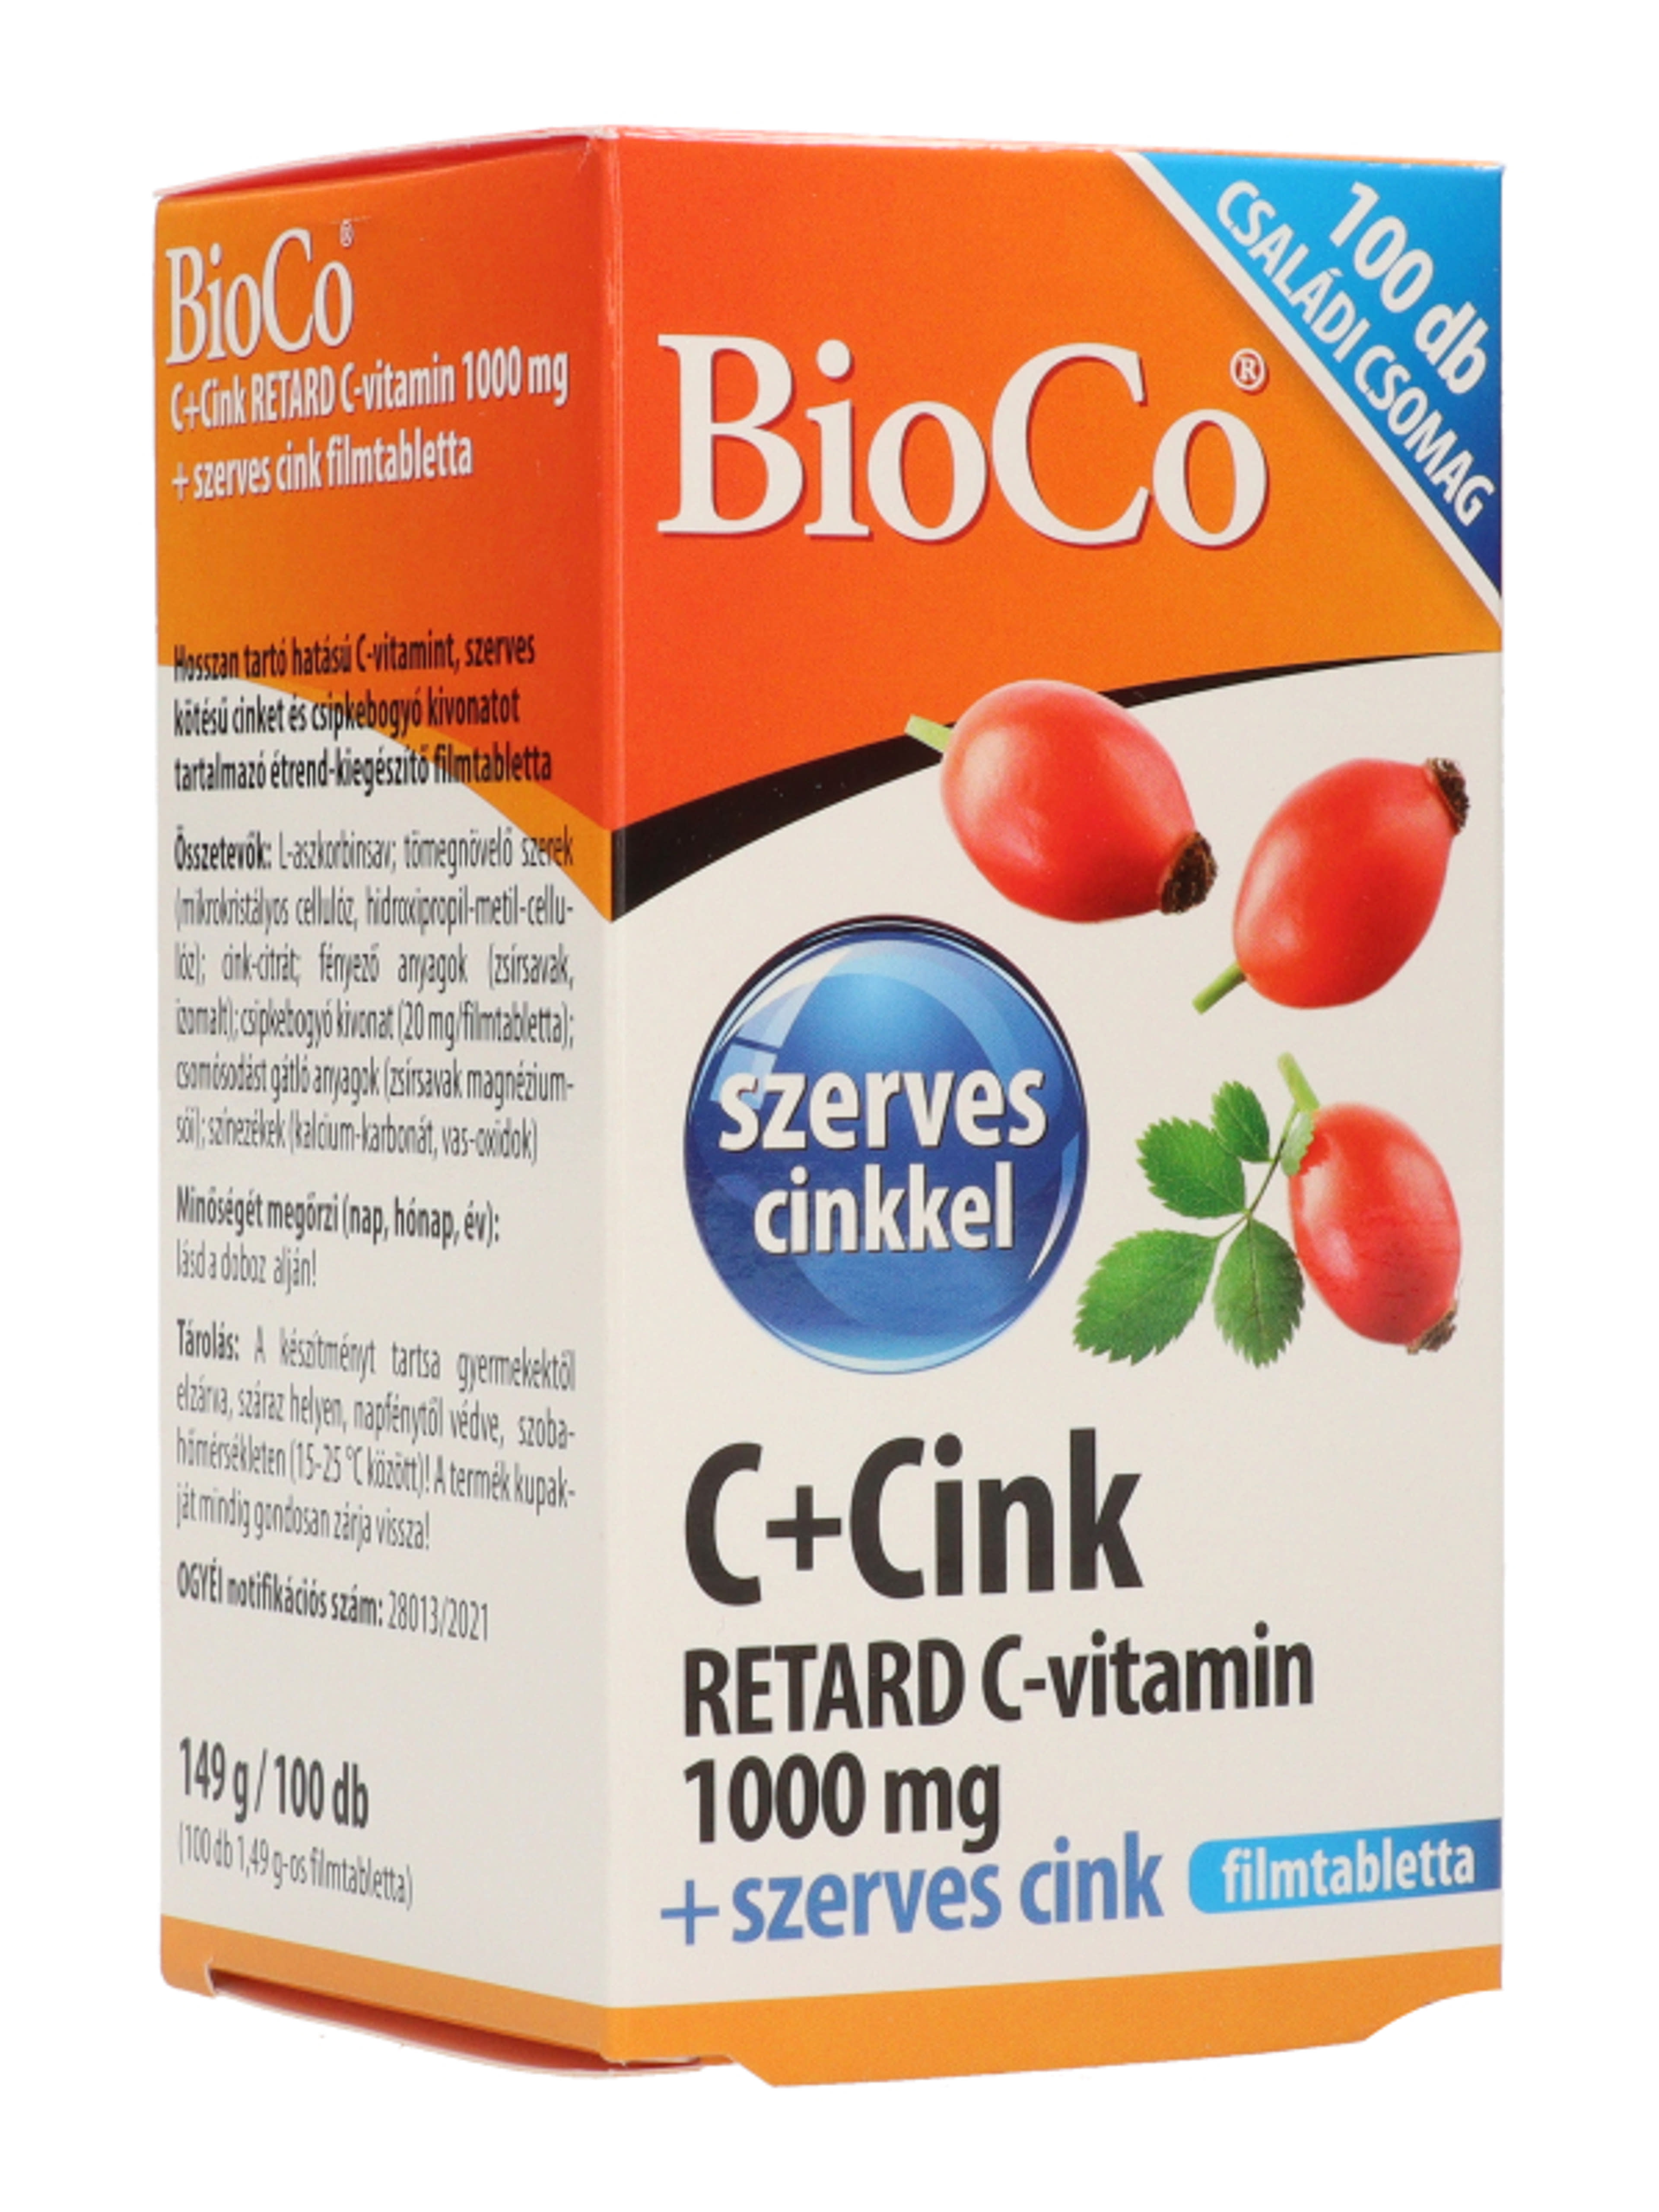 Bioco C+cink retard C-vitamin 1000 mg filmtabletta - 100 db-6